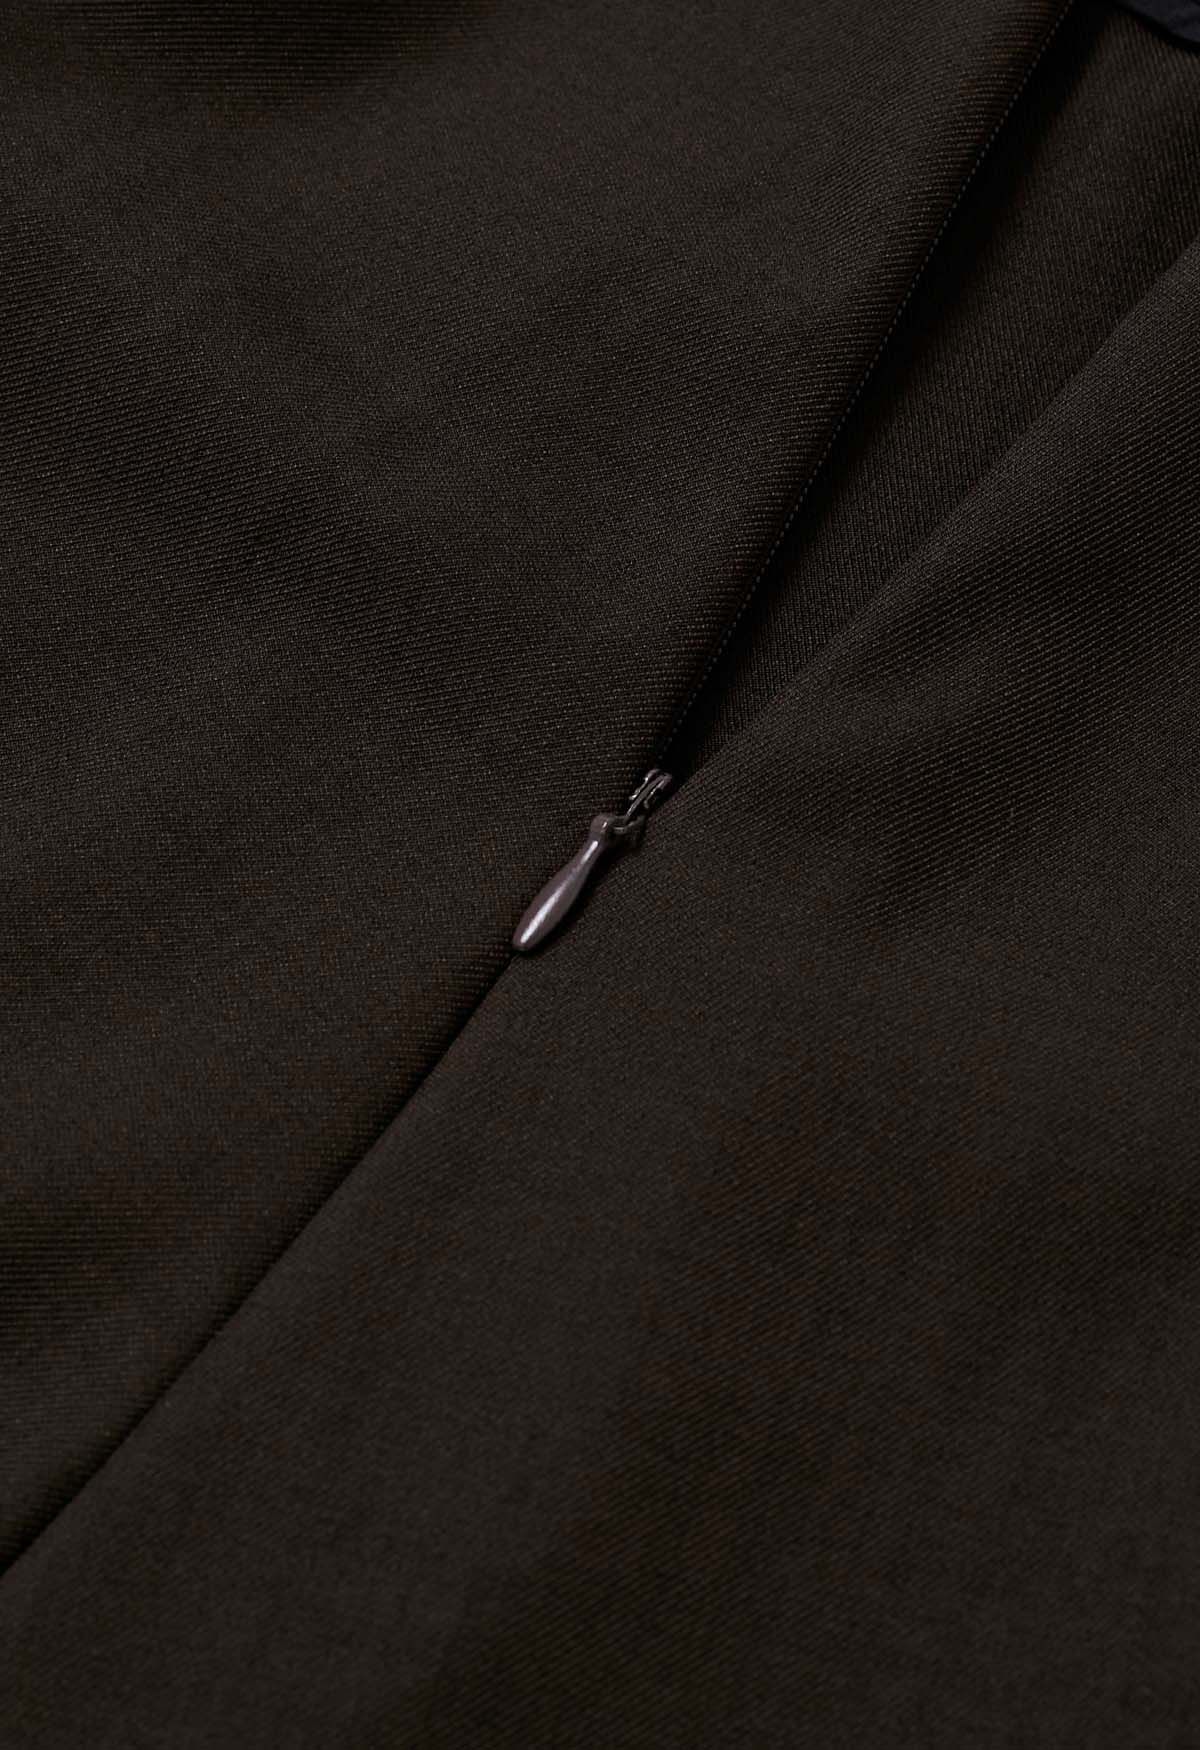 Pantalones anchos plisados con cintura anudada de moda en marrón